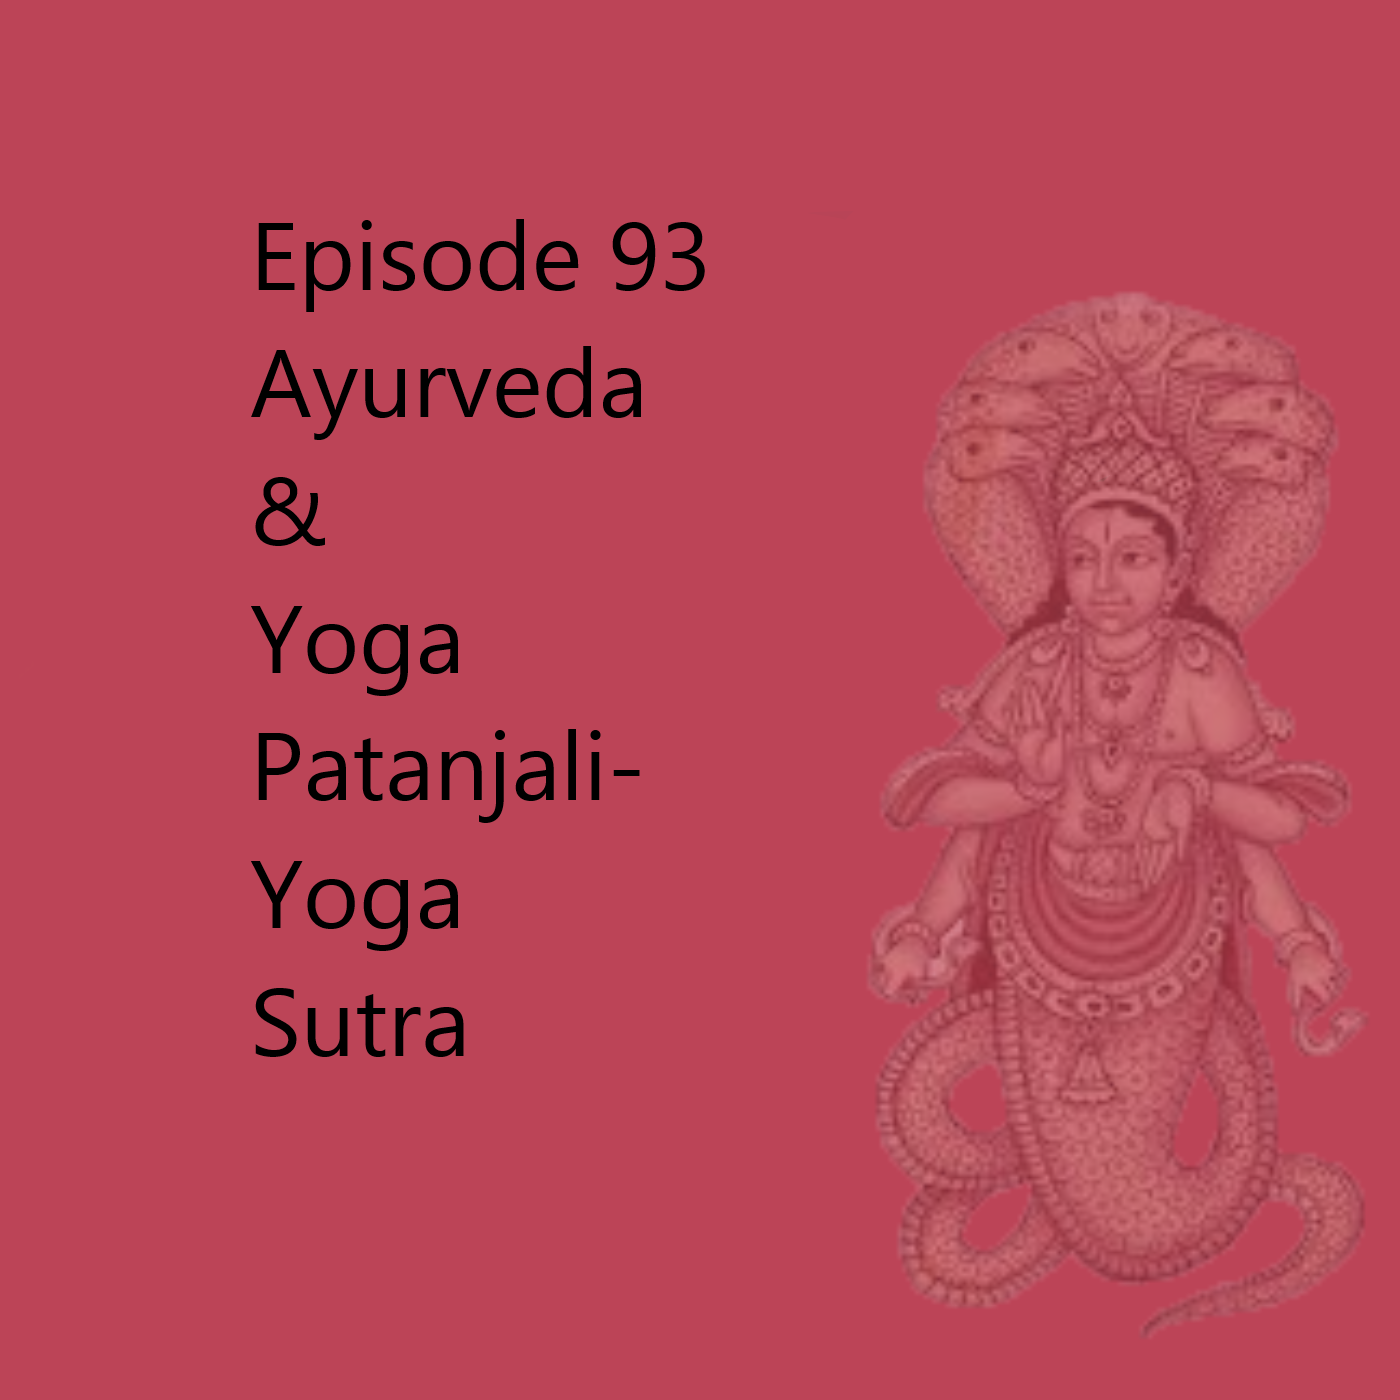 Episode 93 Patanjali Yoga Sutra